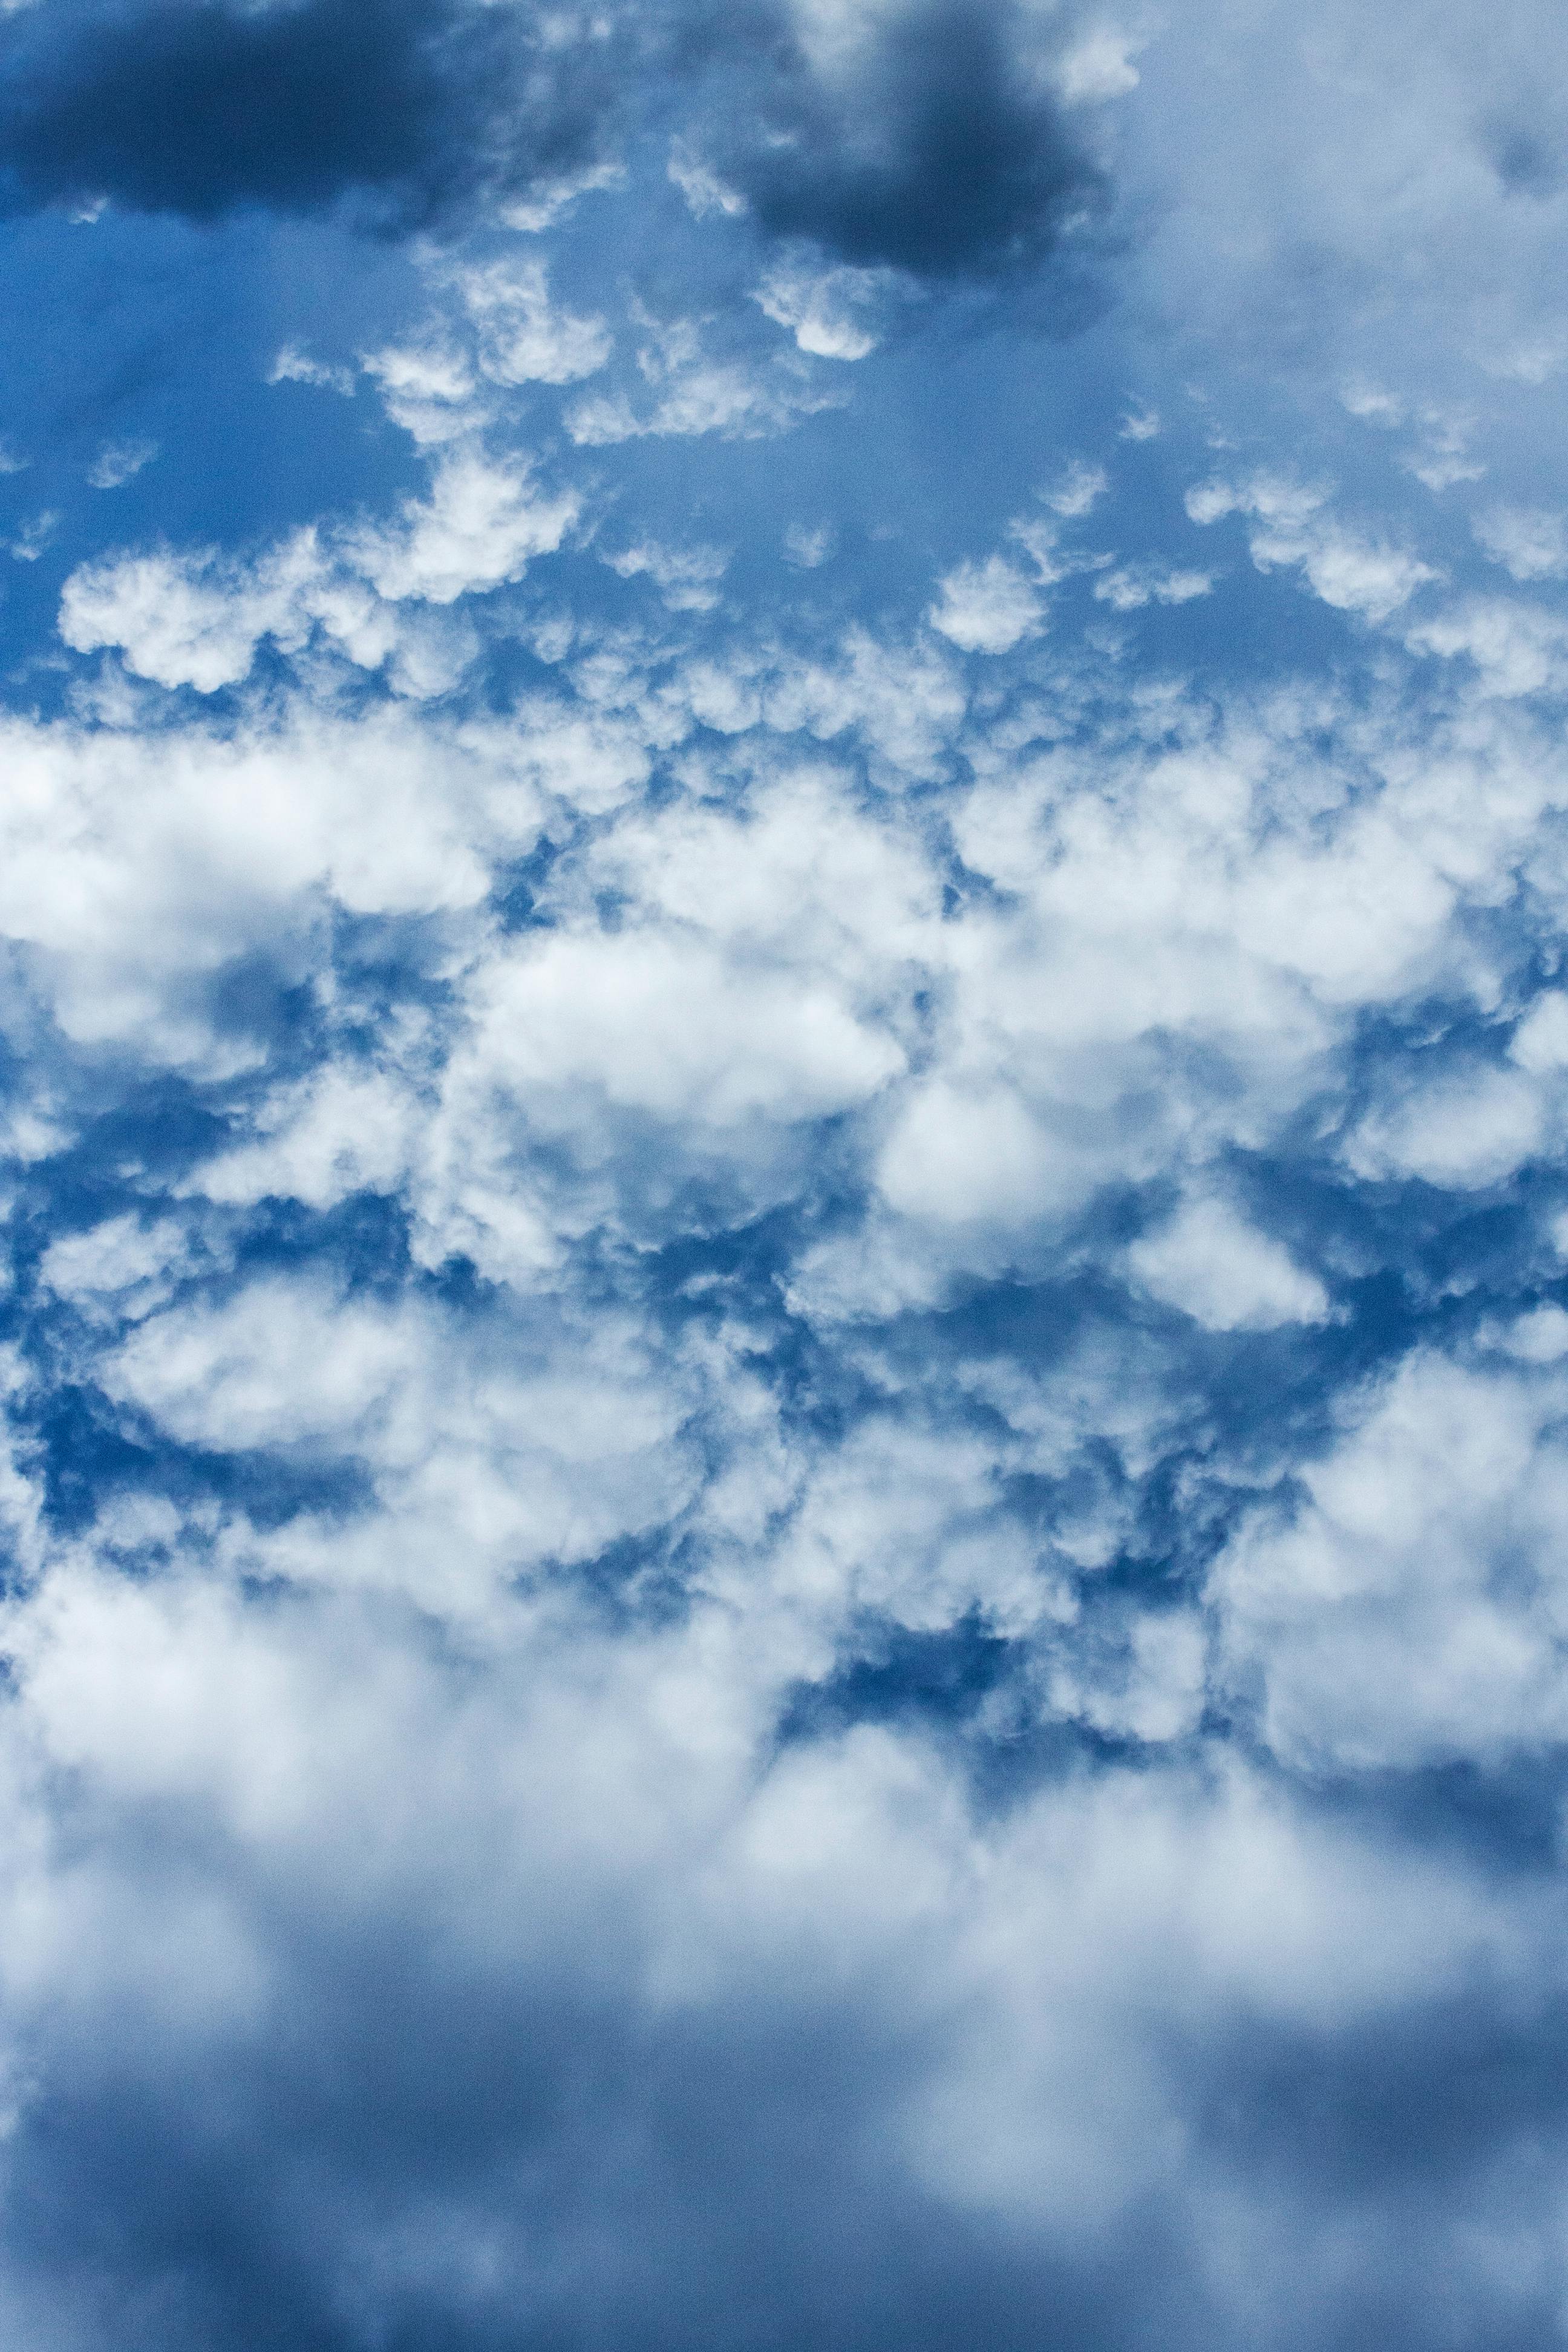 Với nền mây thật điệu đà, bức hình này chắc chắn sẽ khiến bạn thích thú và muốn chìm đắm vào cuộc phiêu lưu giữa mây trời xanh.